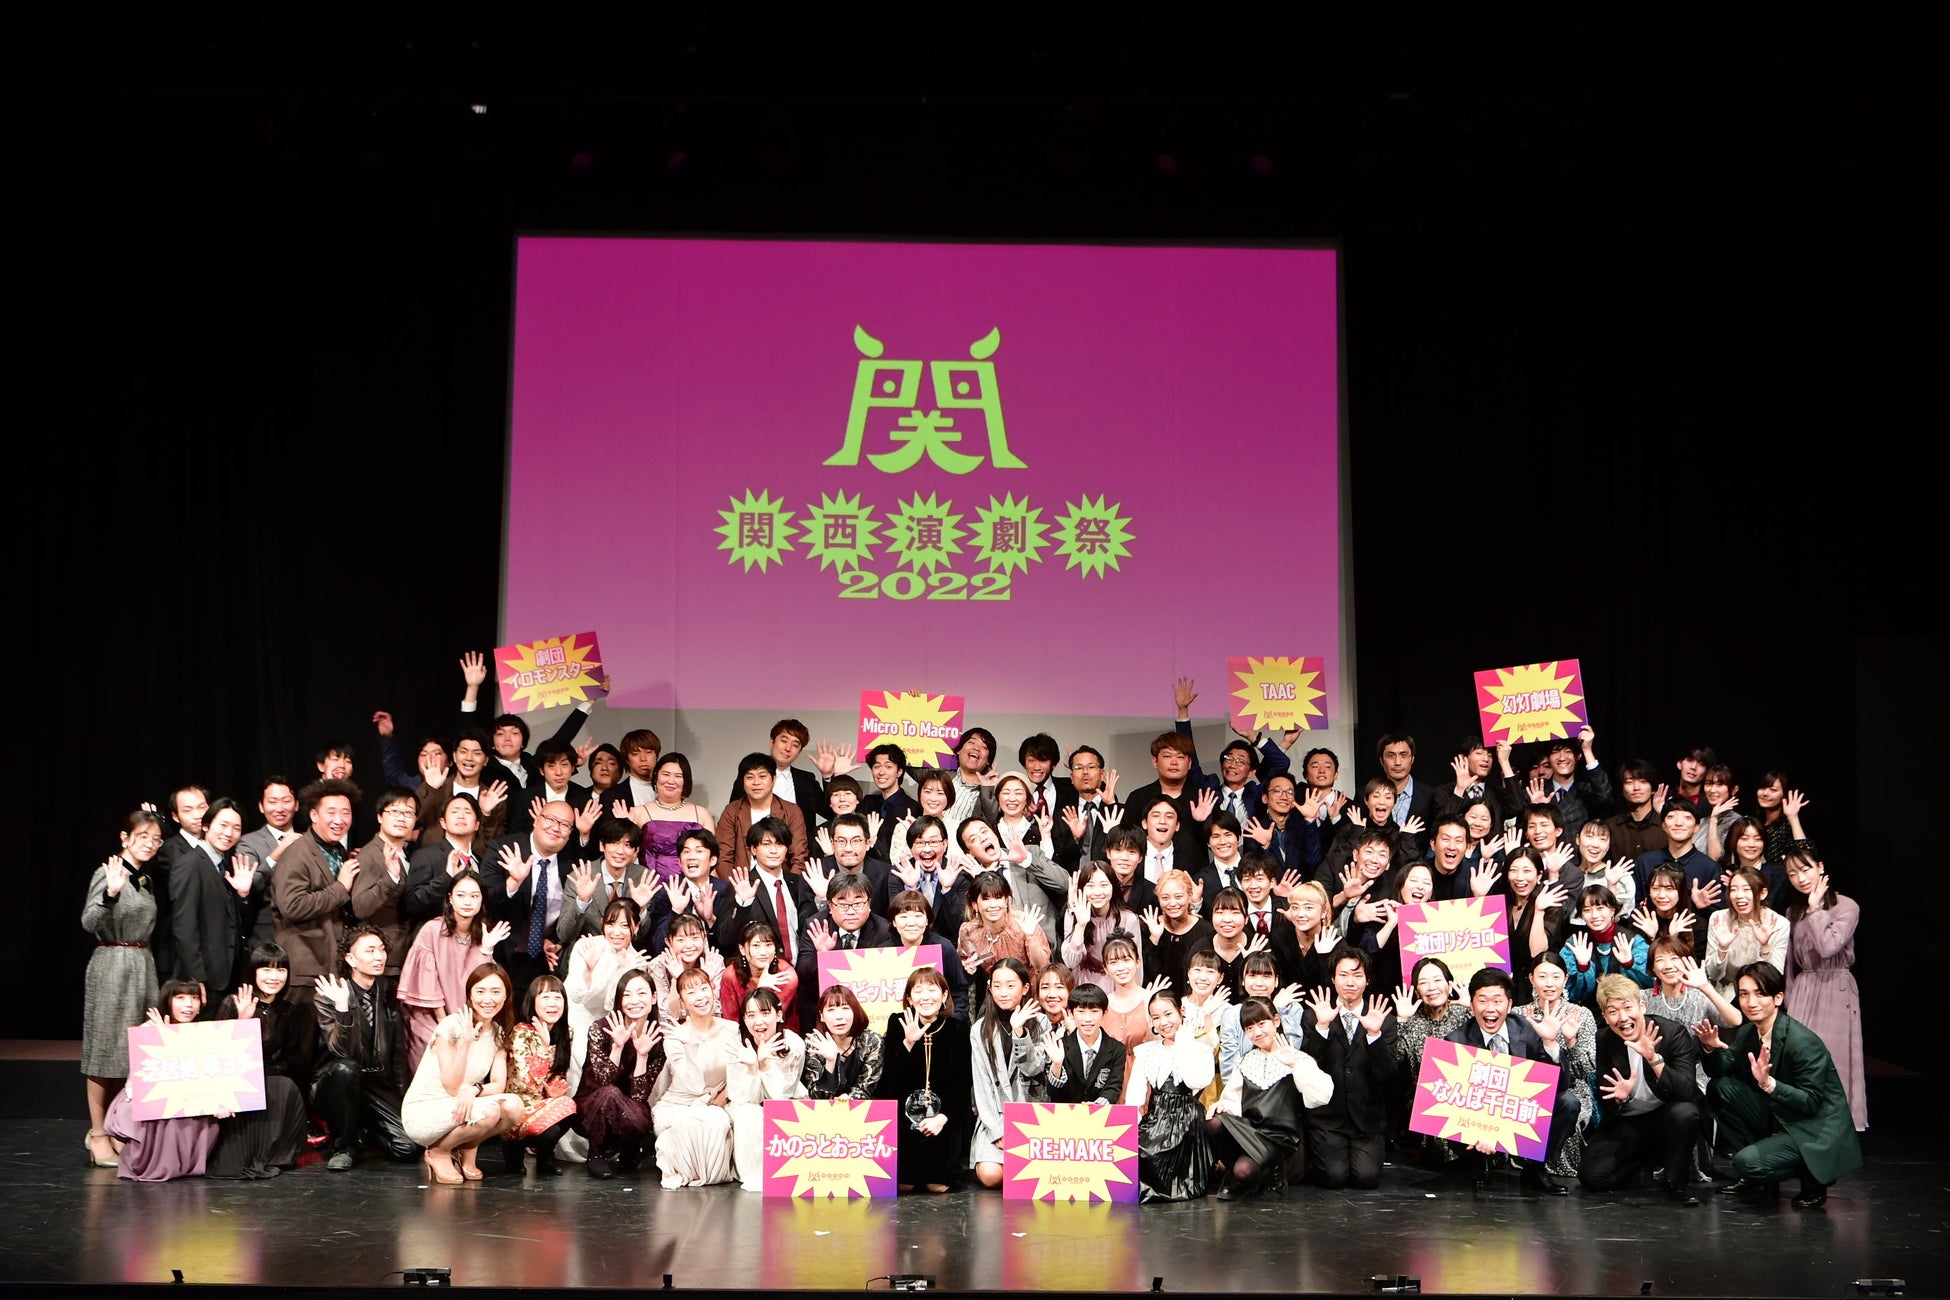 関西演劇祭 in Tokyoが3月21日(火)からスタート&関西演劇祭2023参加劇団募集開始のお知らせのサブ画像2